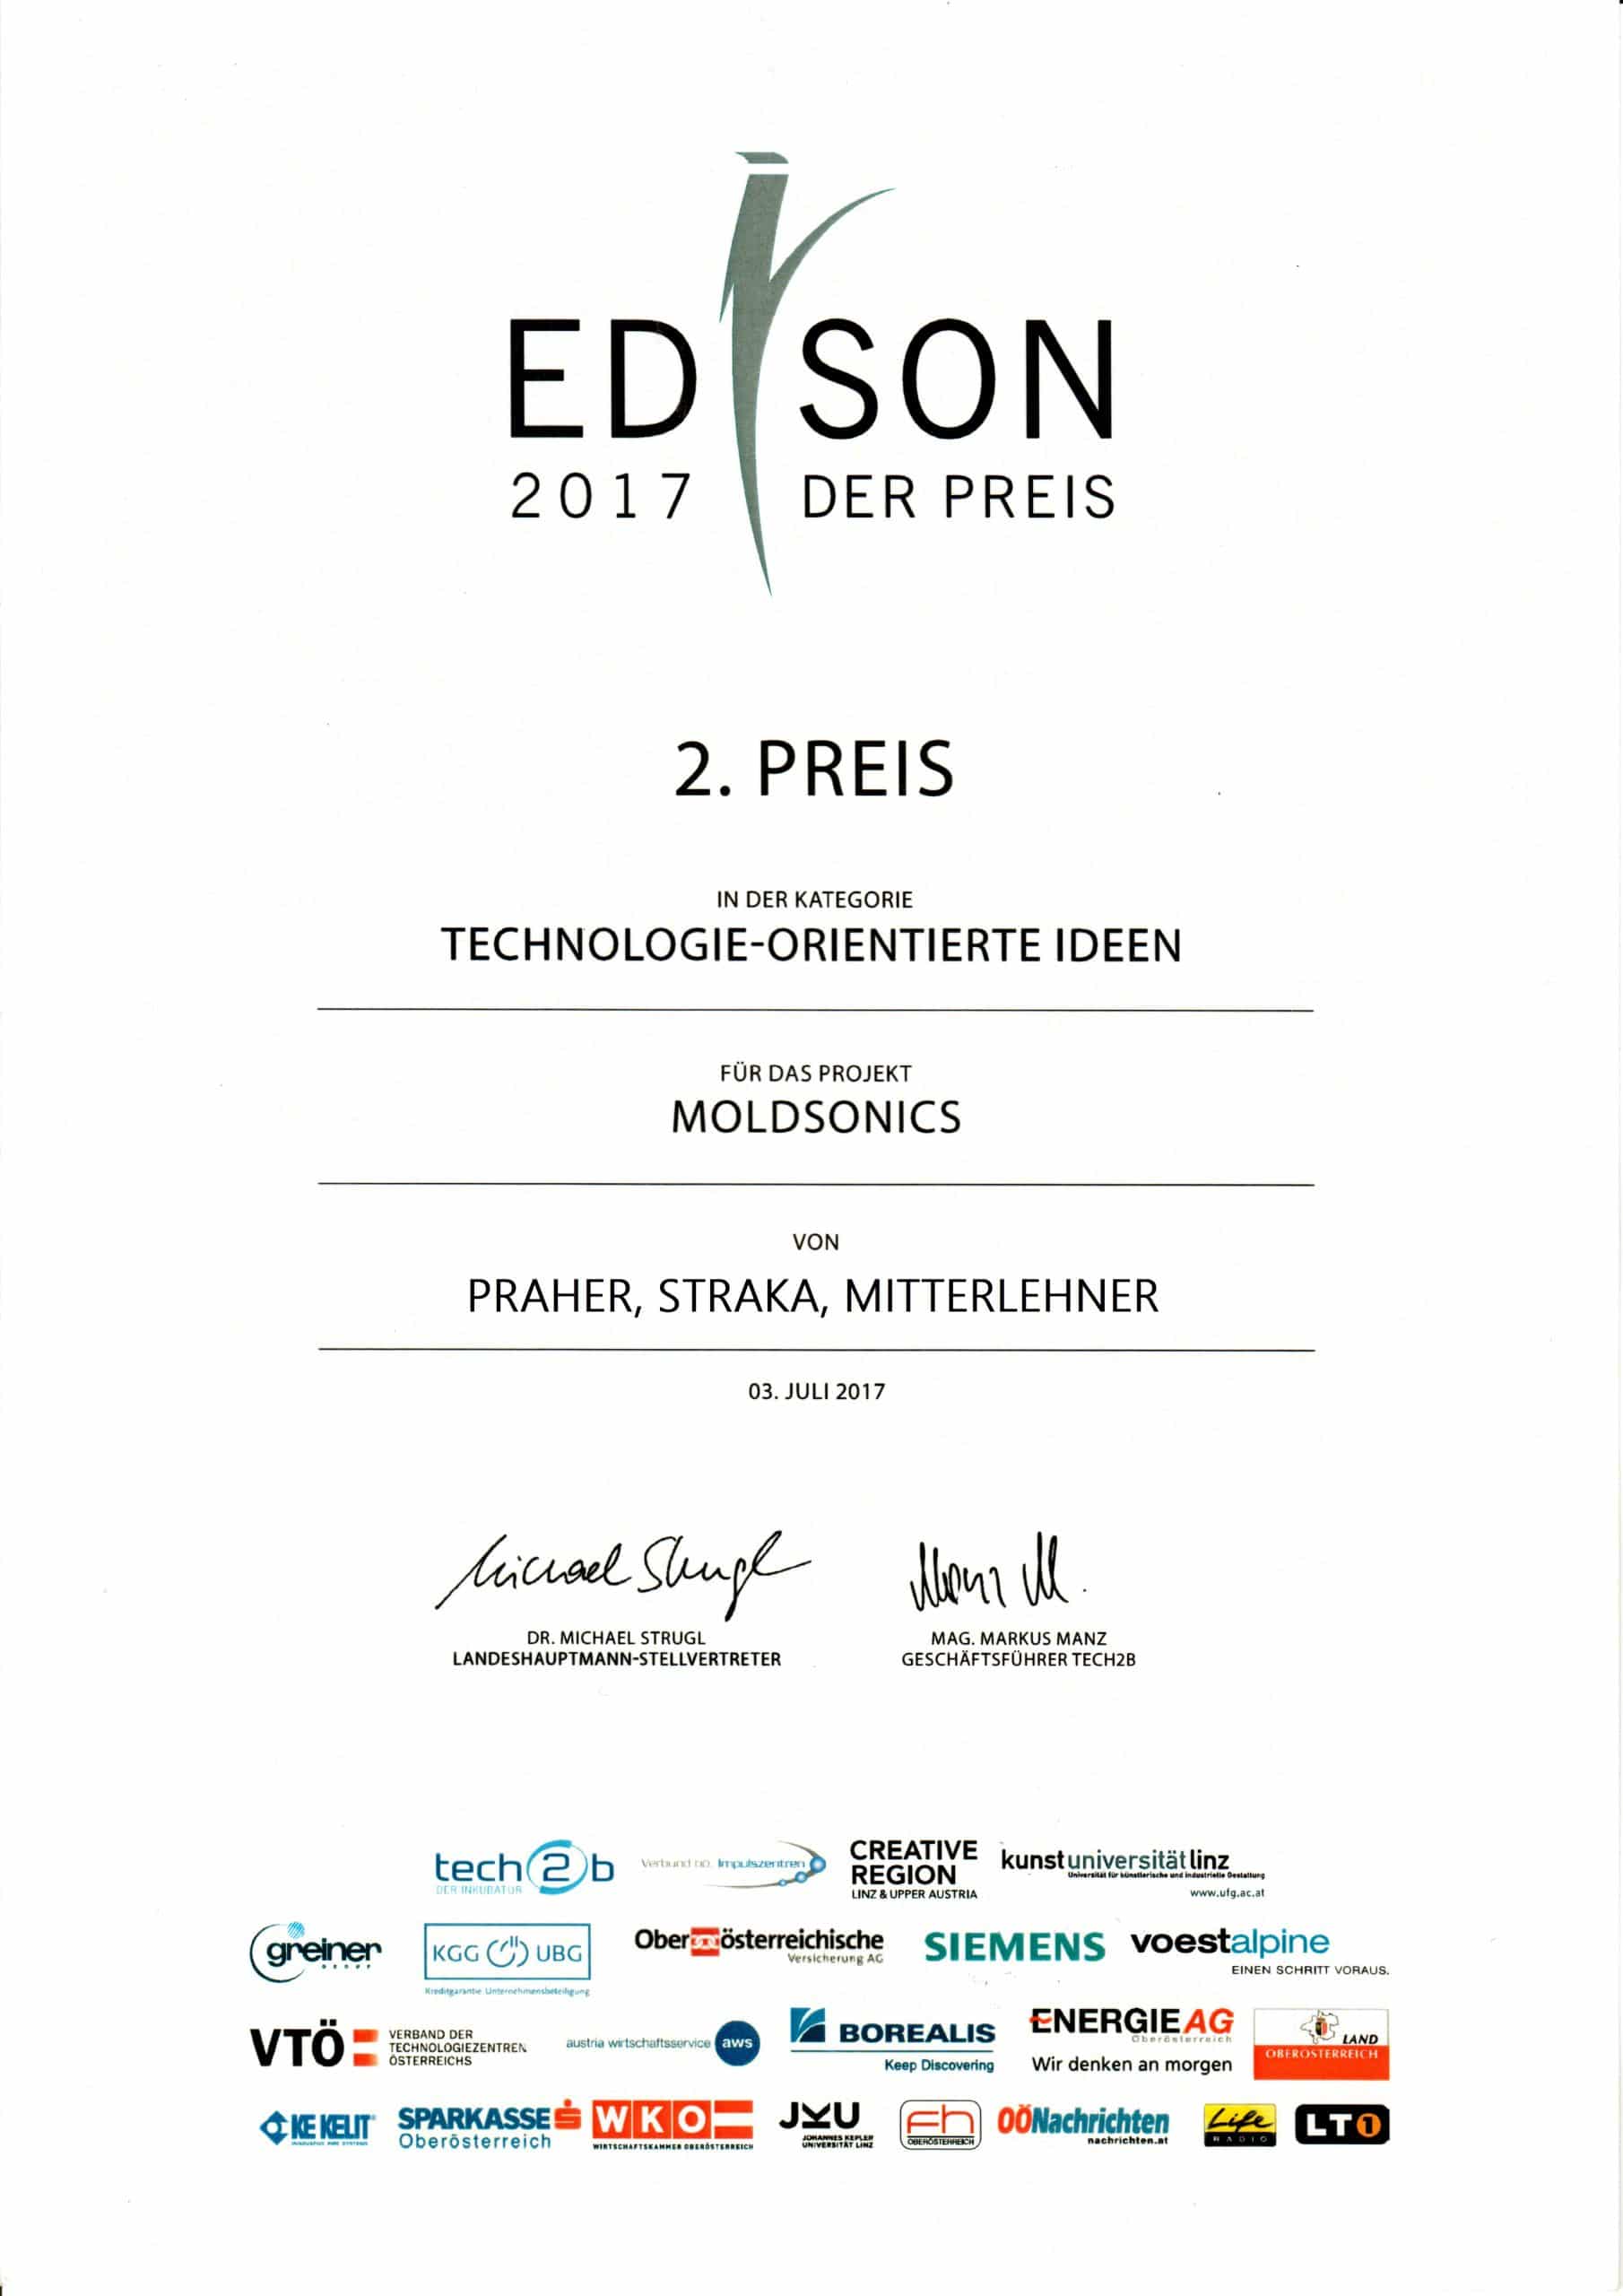 Edison Preis 2017